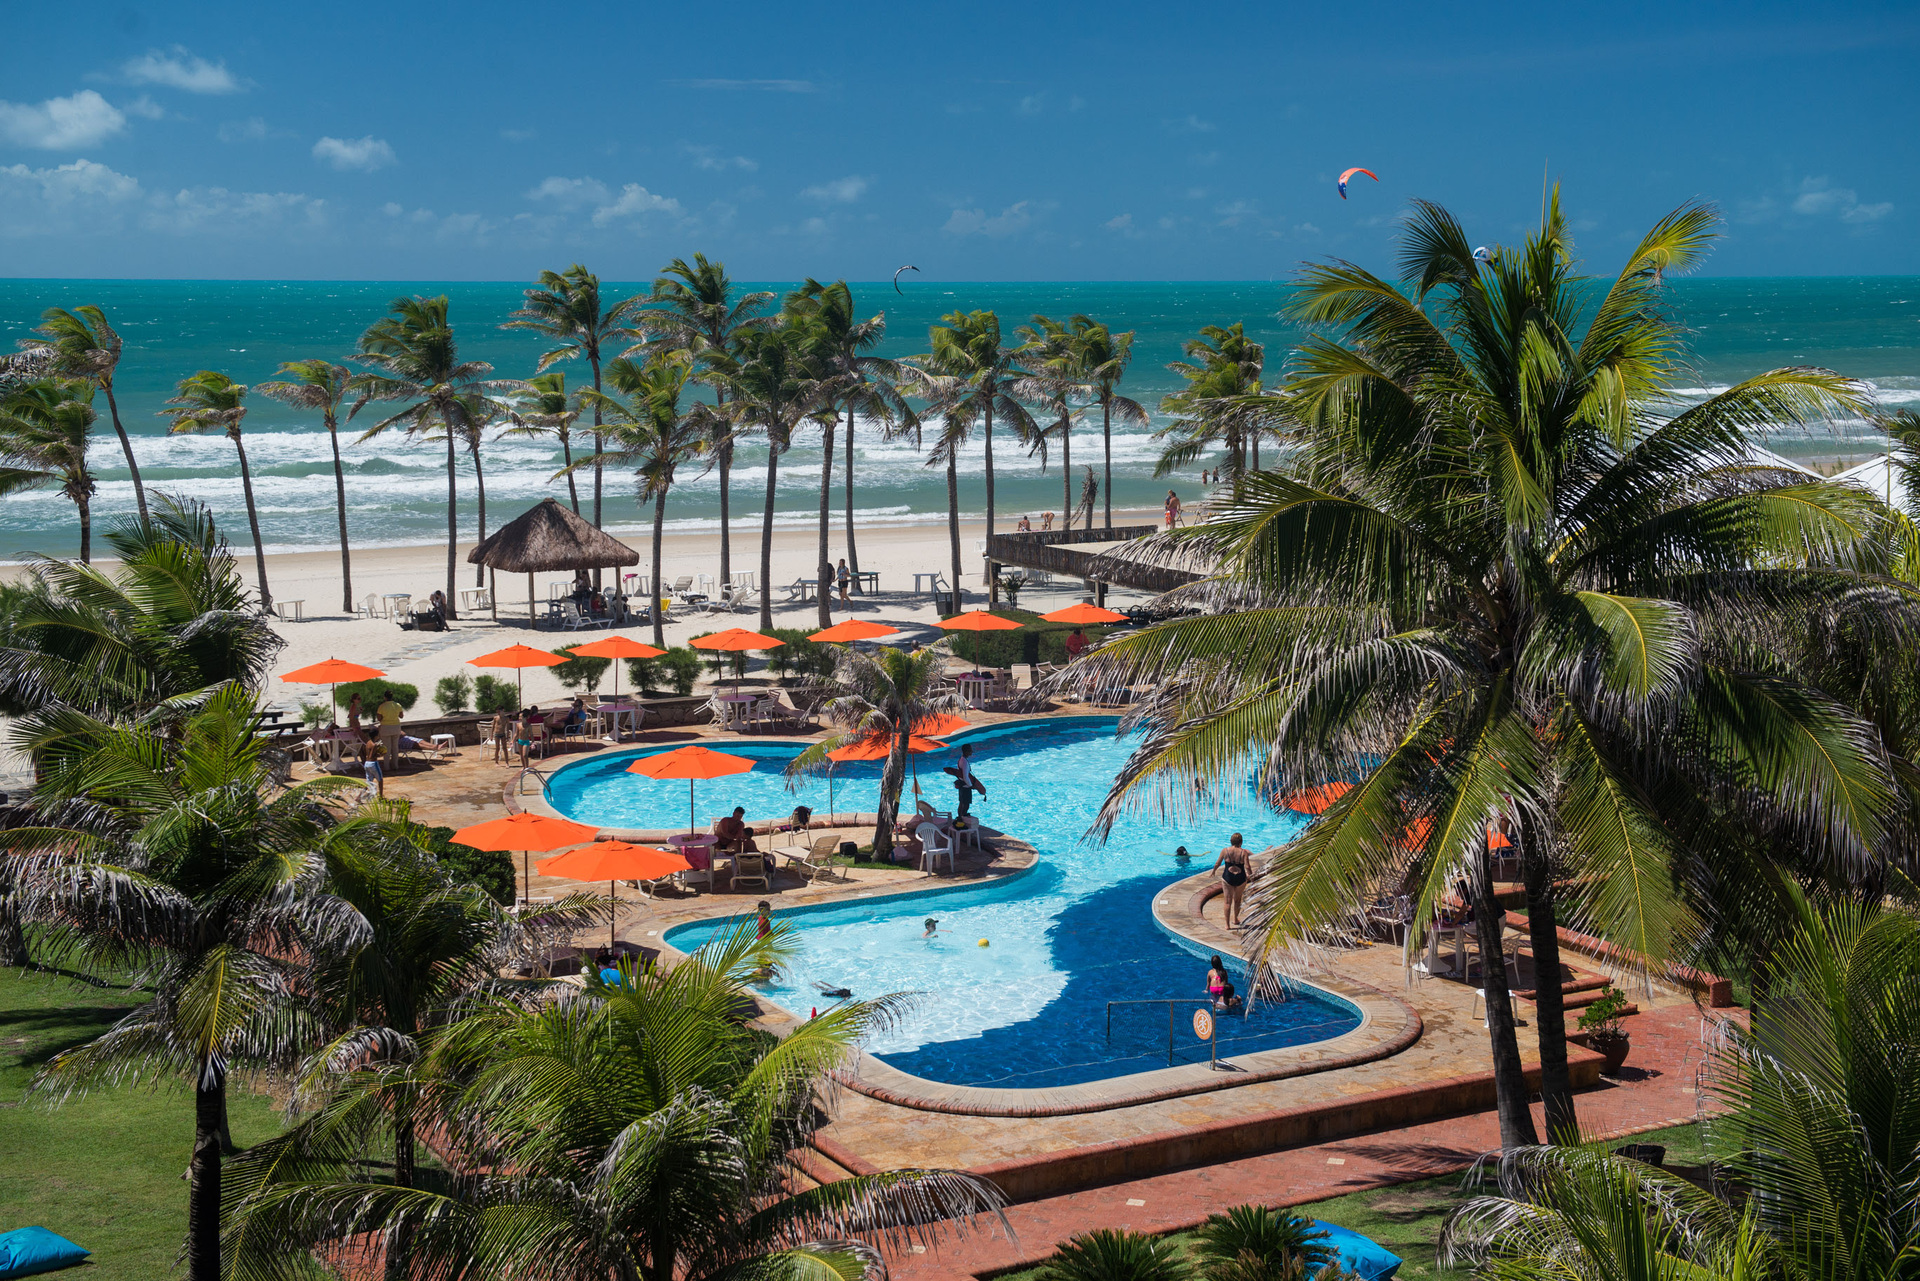 Vista do Oceani Beach Park Hotel, um dos hotéis e resorts com diárias em promoção